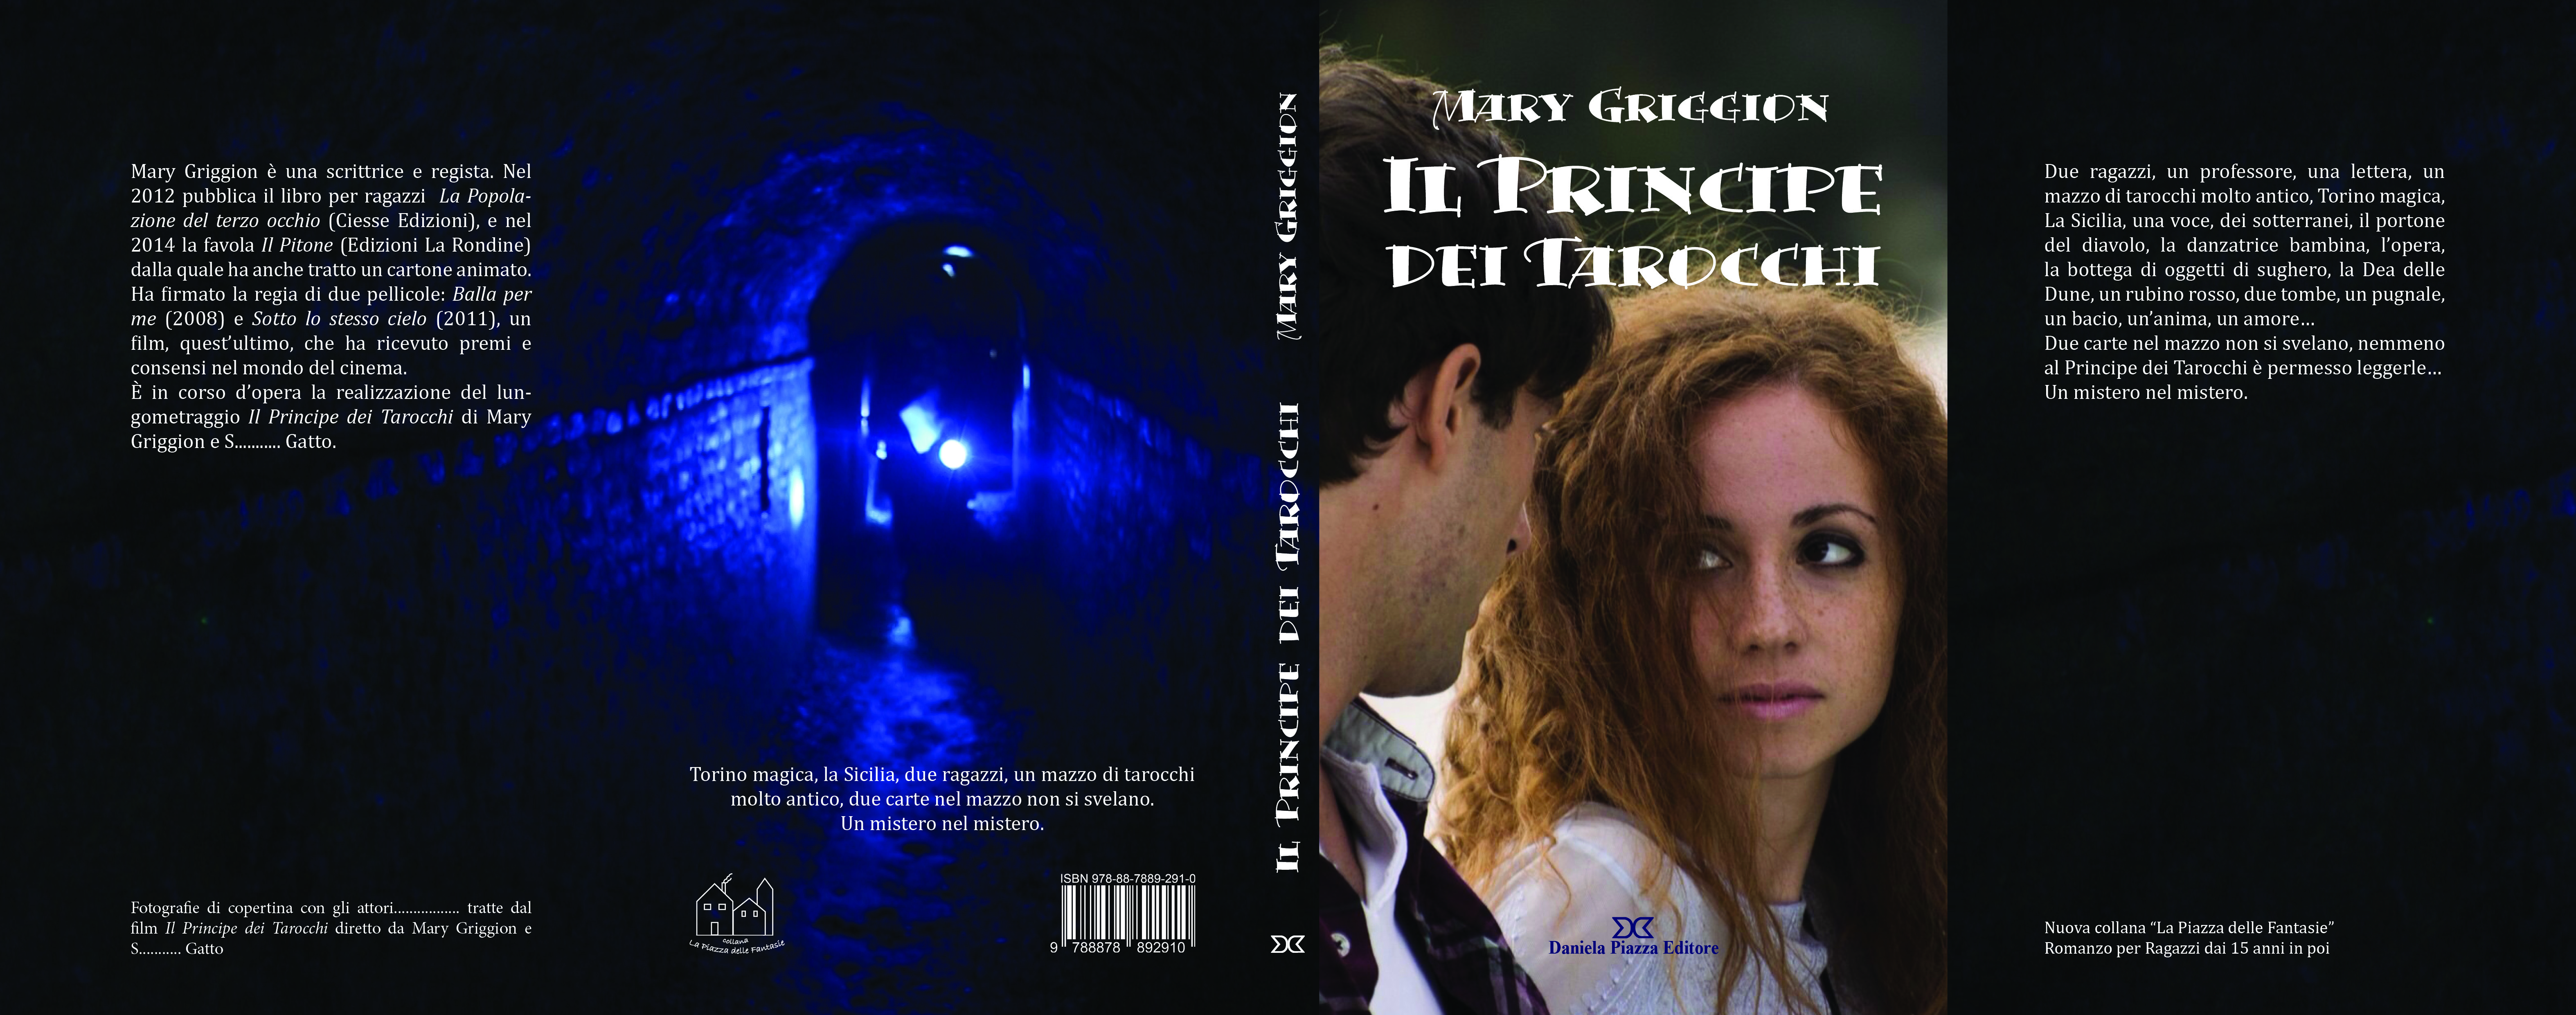 Amici di Mondospettacolo, oggi parleremo del nuovo film di Mary Griggion: Il Principe dei Tarocchi. Parliamone con la regista. Come è nata  l’idea di realizzare il  film? Quando abbiamo deciso: […]